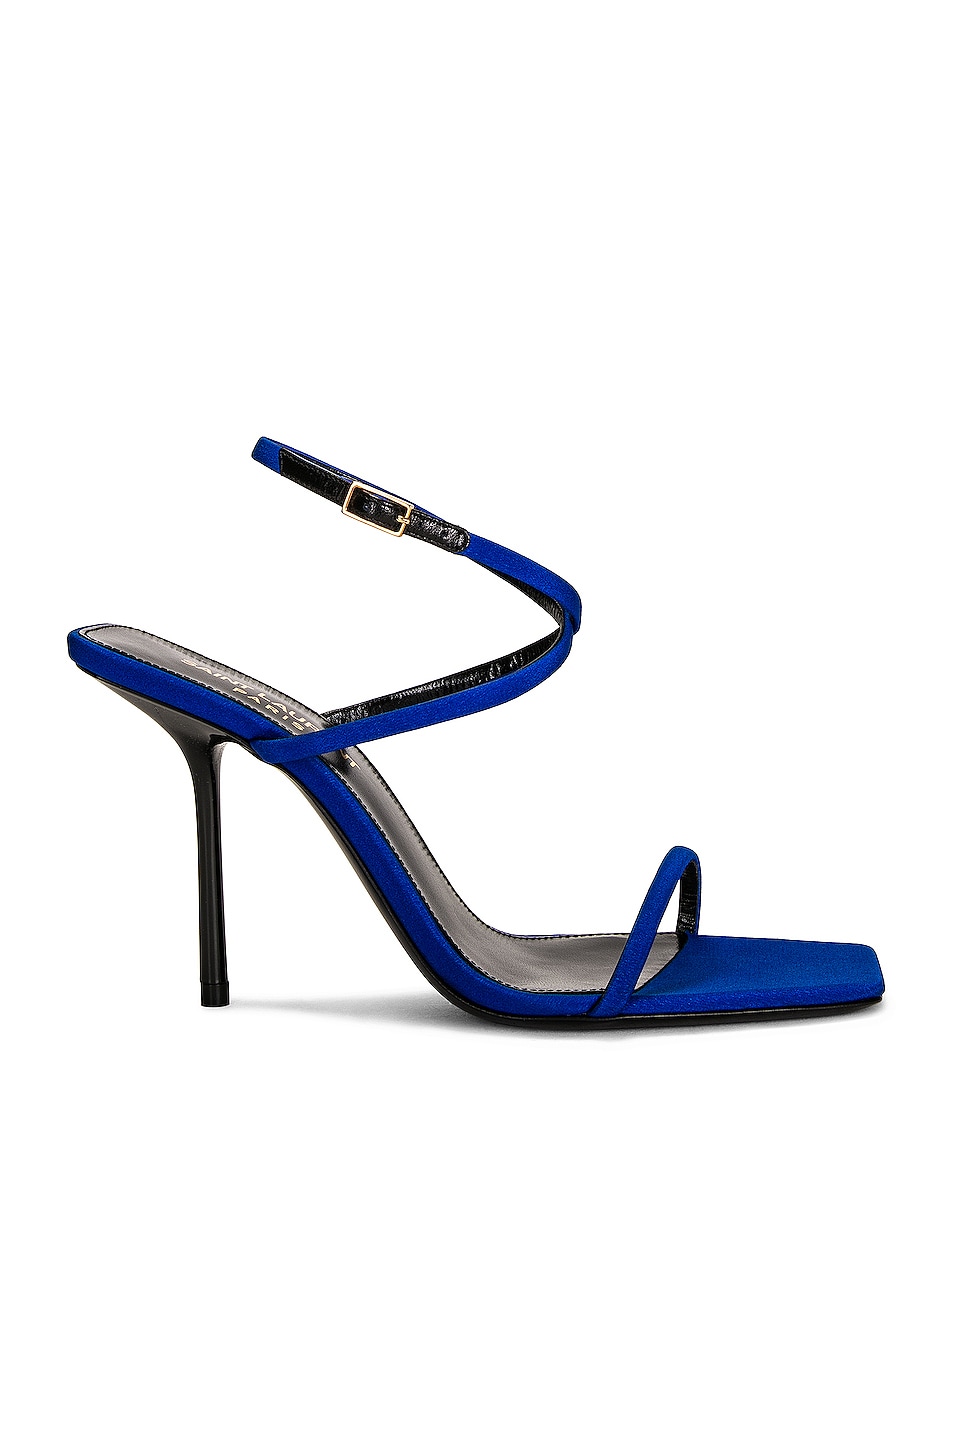 Image 1 of Saint Laurent Baliqua Sandals in Picasso Blue